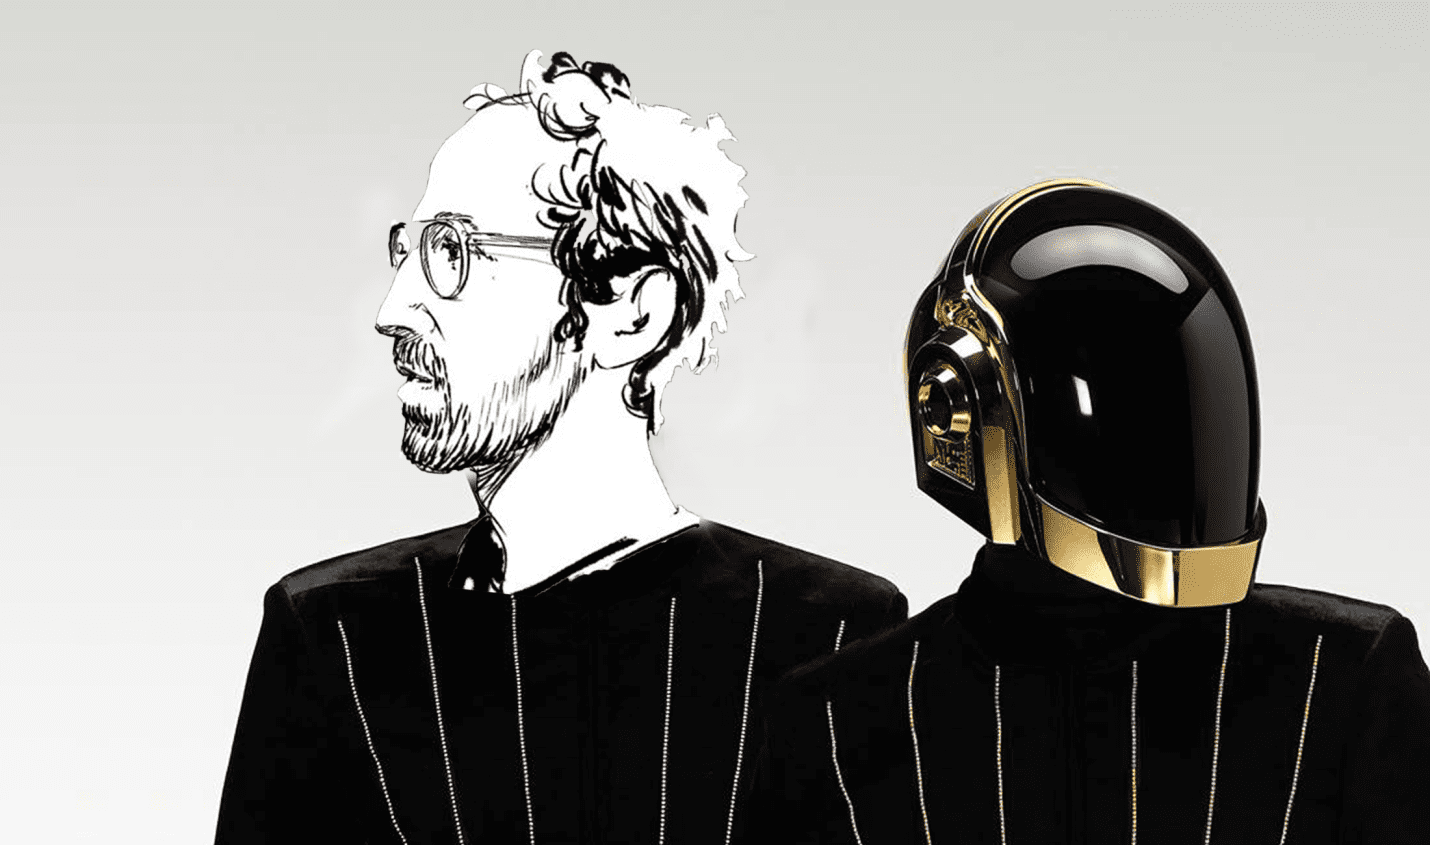 Thomas Bangalter begründet Ende von Daft Punk: "Das letzte was ich heute sein möchte ist ein Roboter"